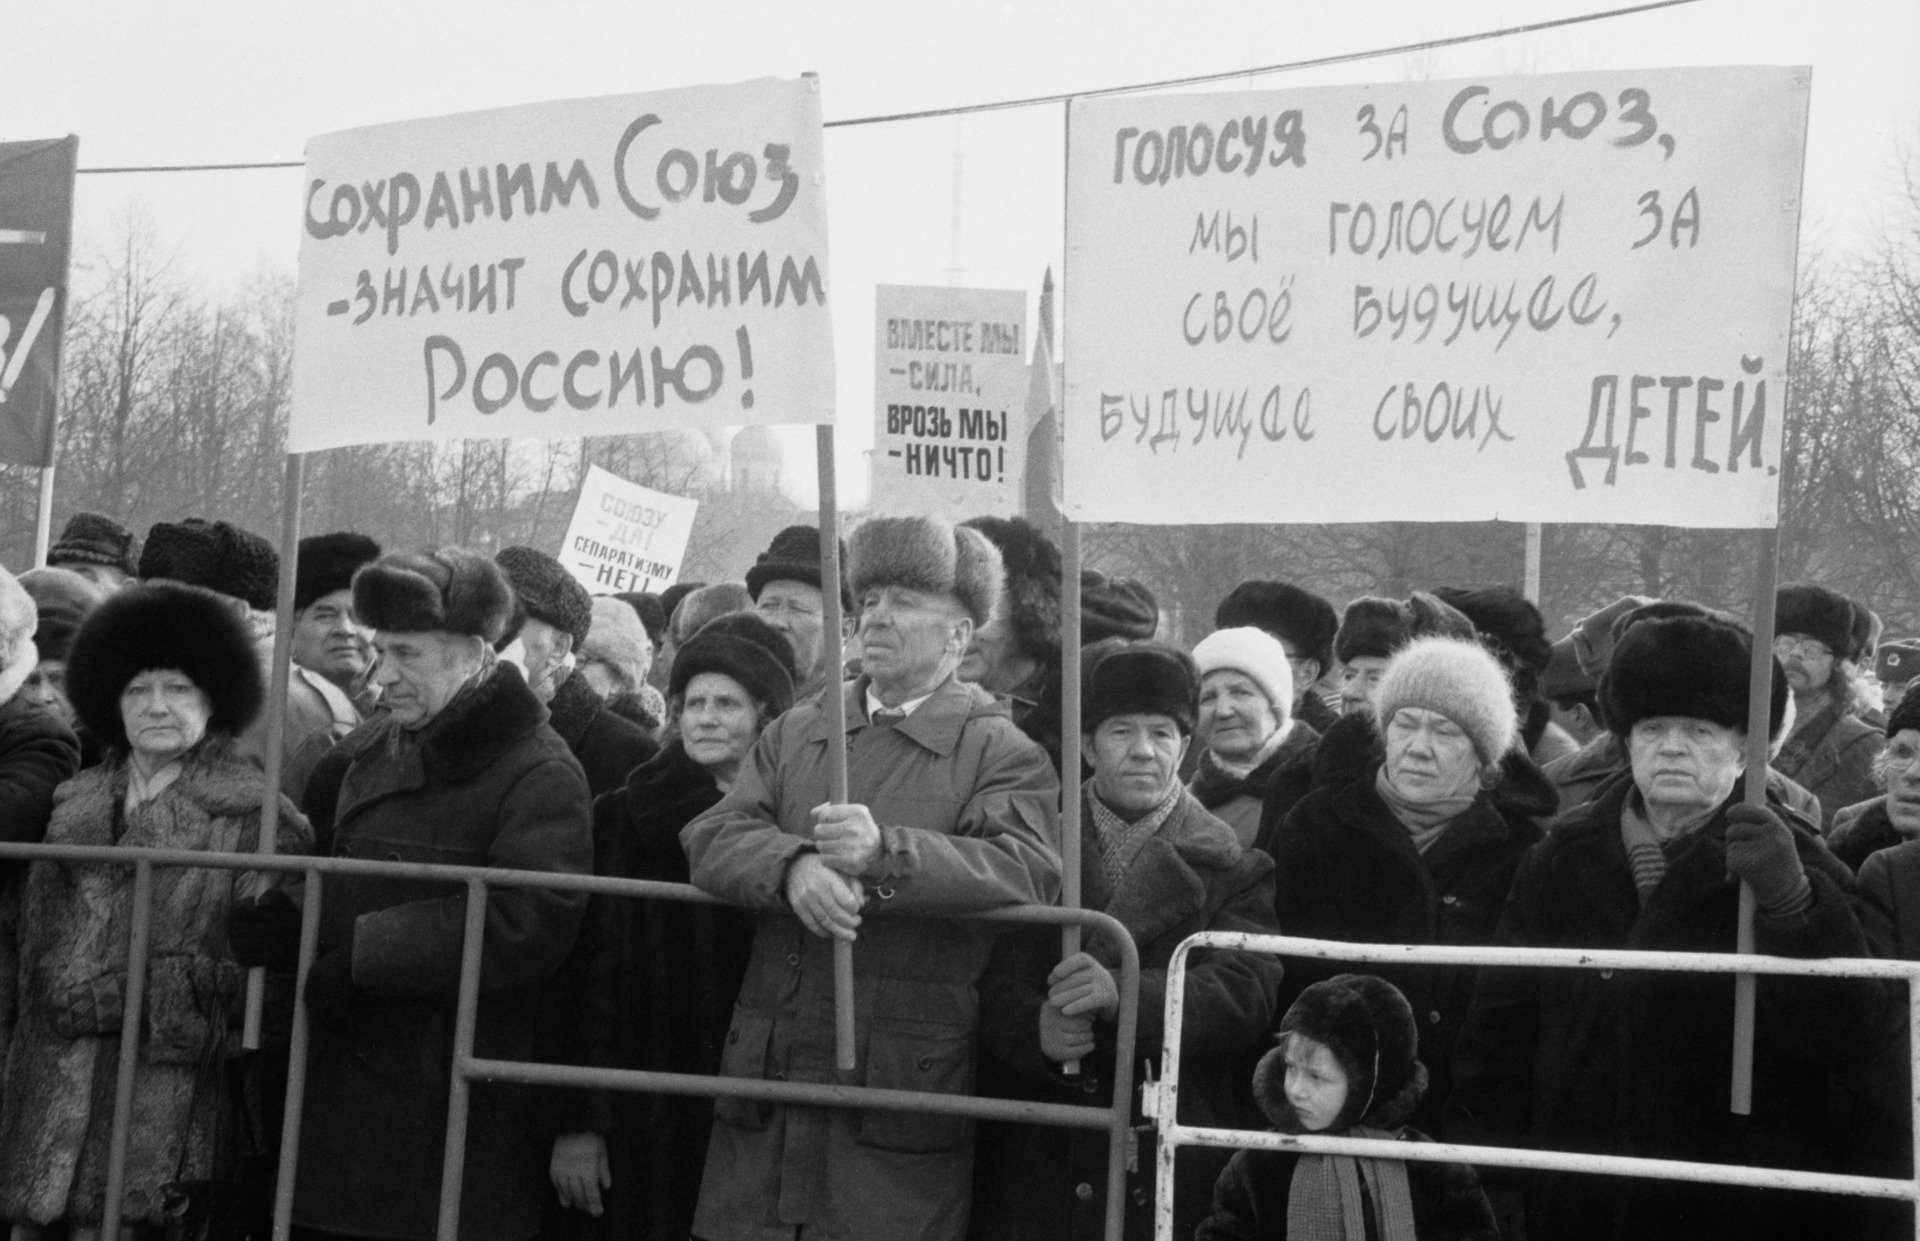 Митинг сторонников сохранения СССР. Фото: Овчинников Александр / Фотохроника